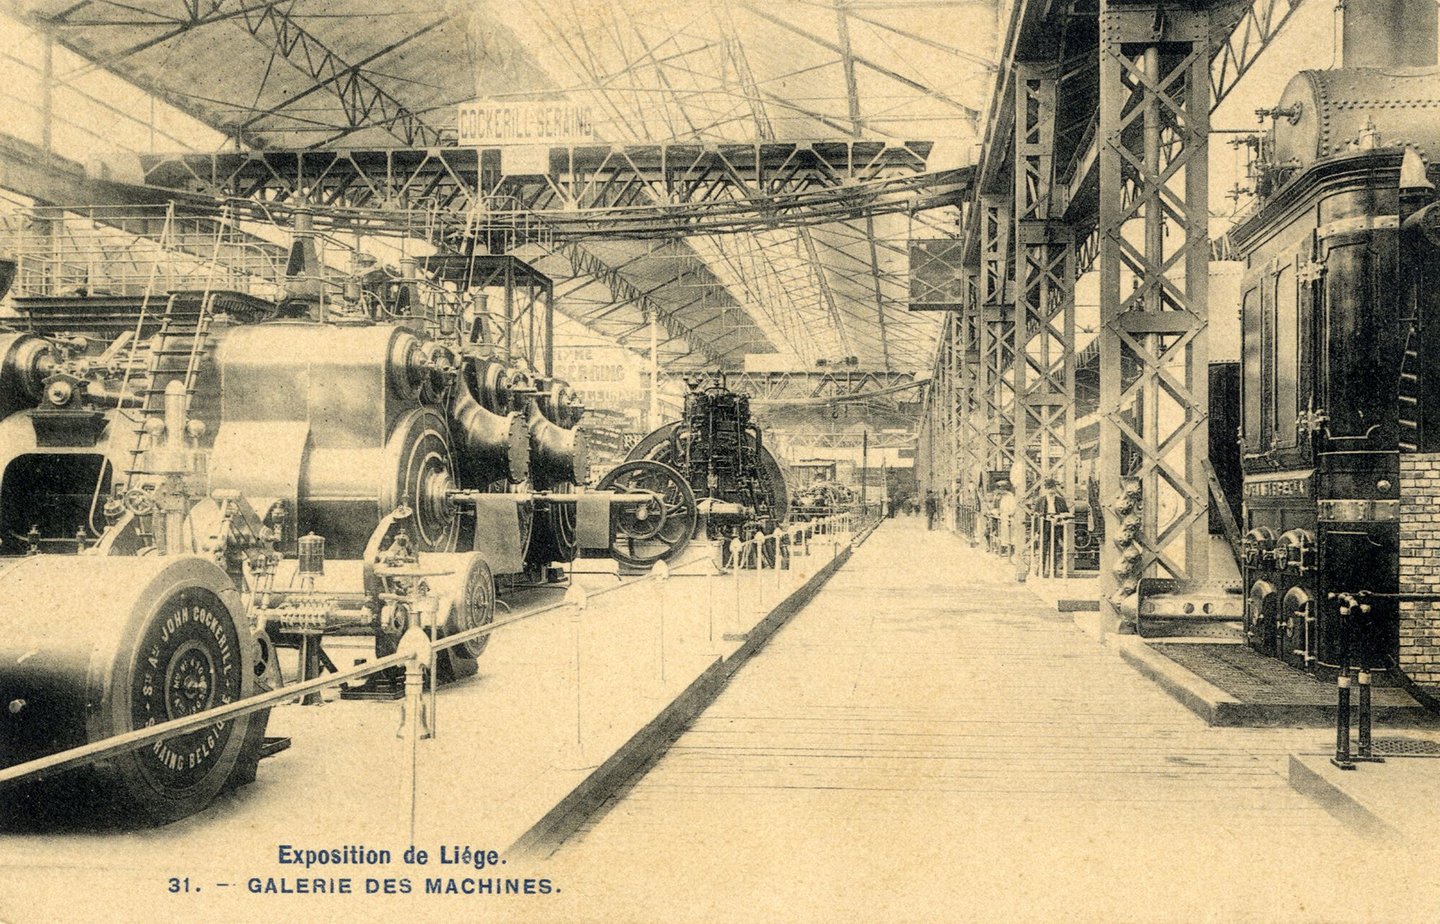 Promotiestand van machinebouwer Cockerill op de wereldtentoonstelling in Luik van 1905